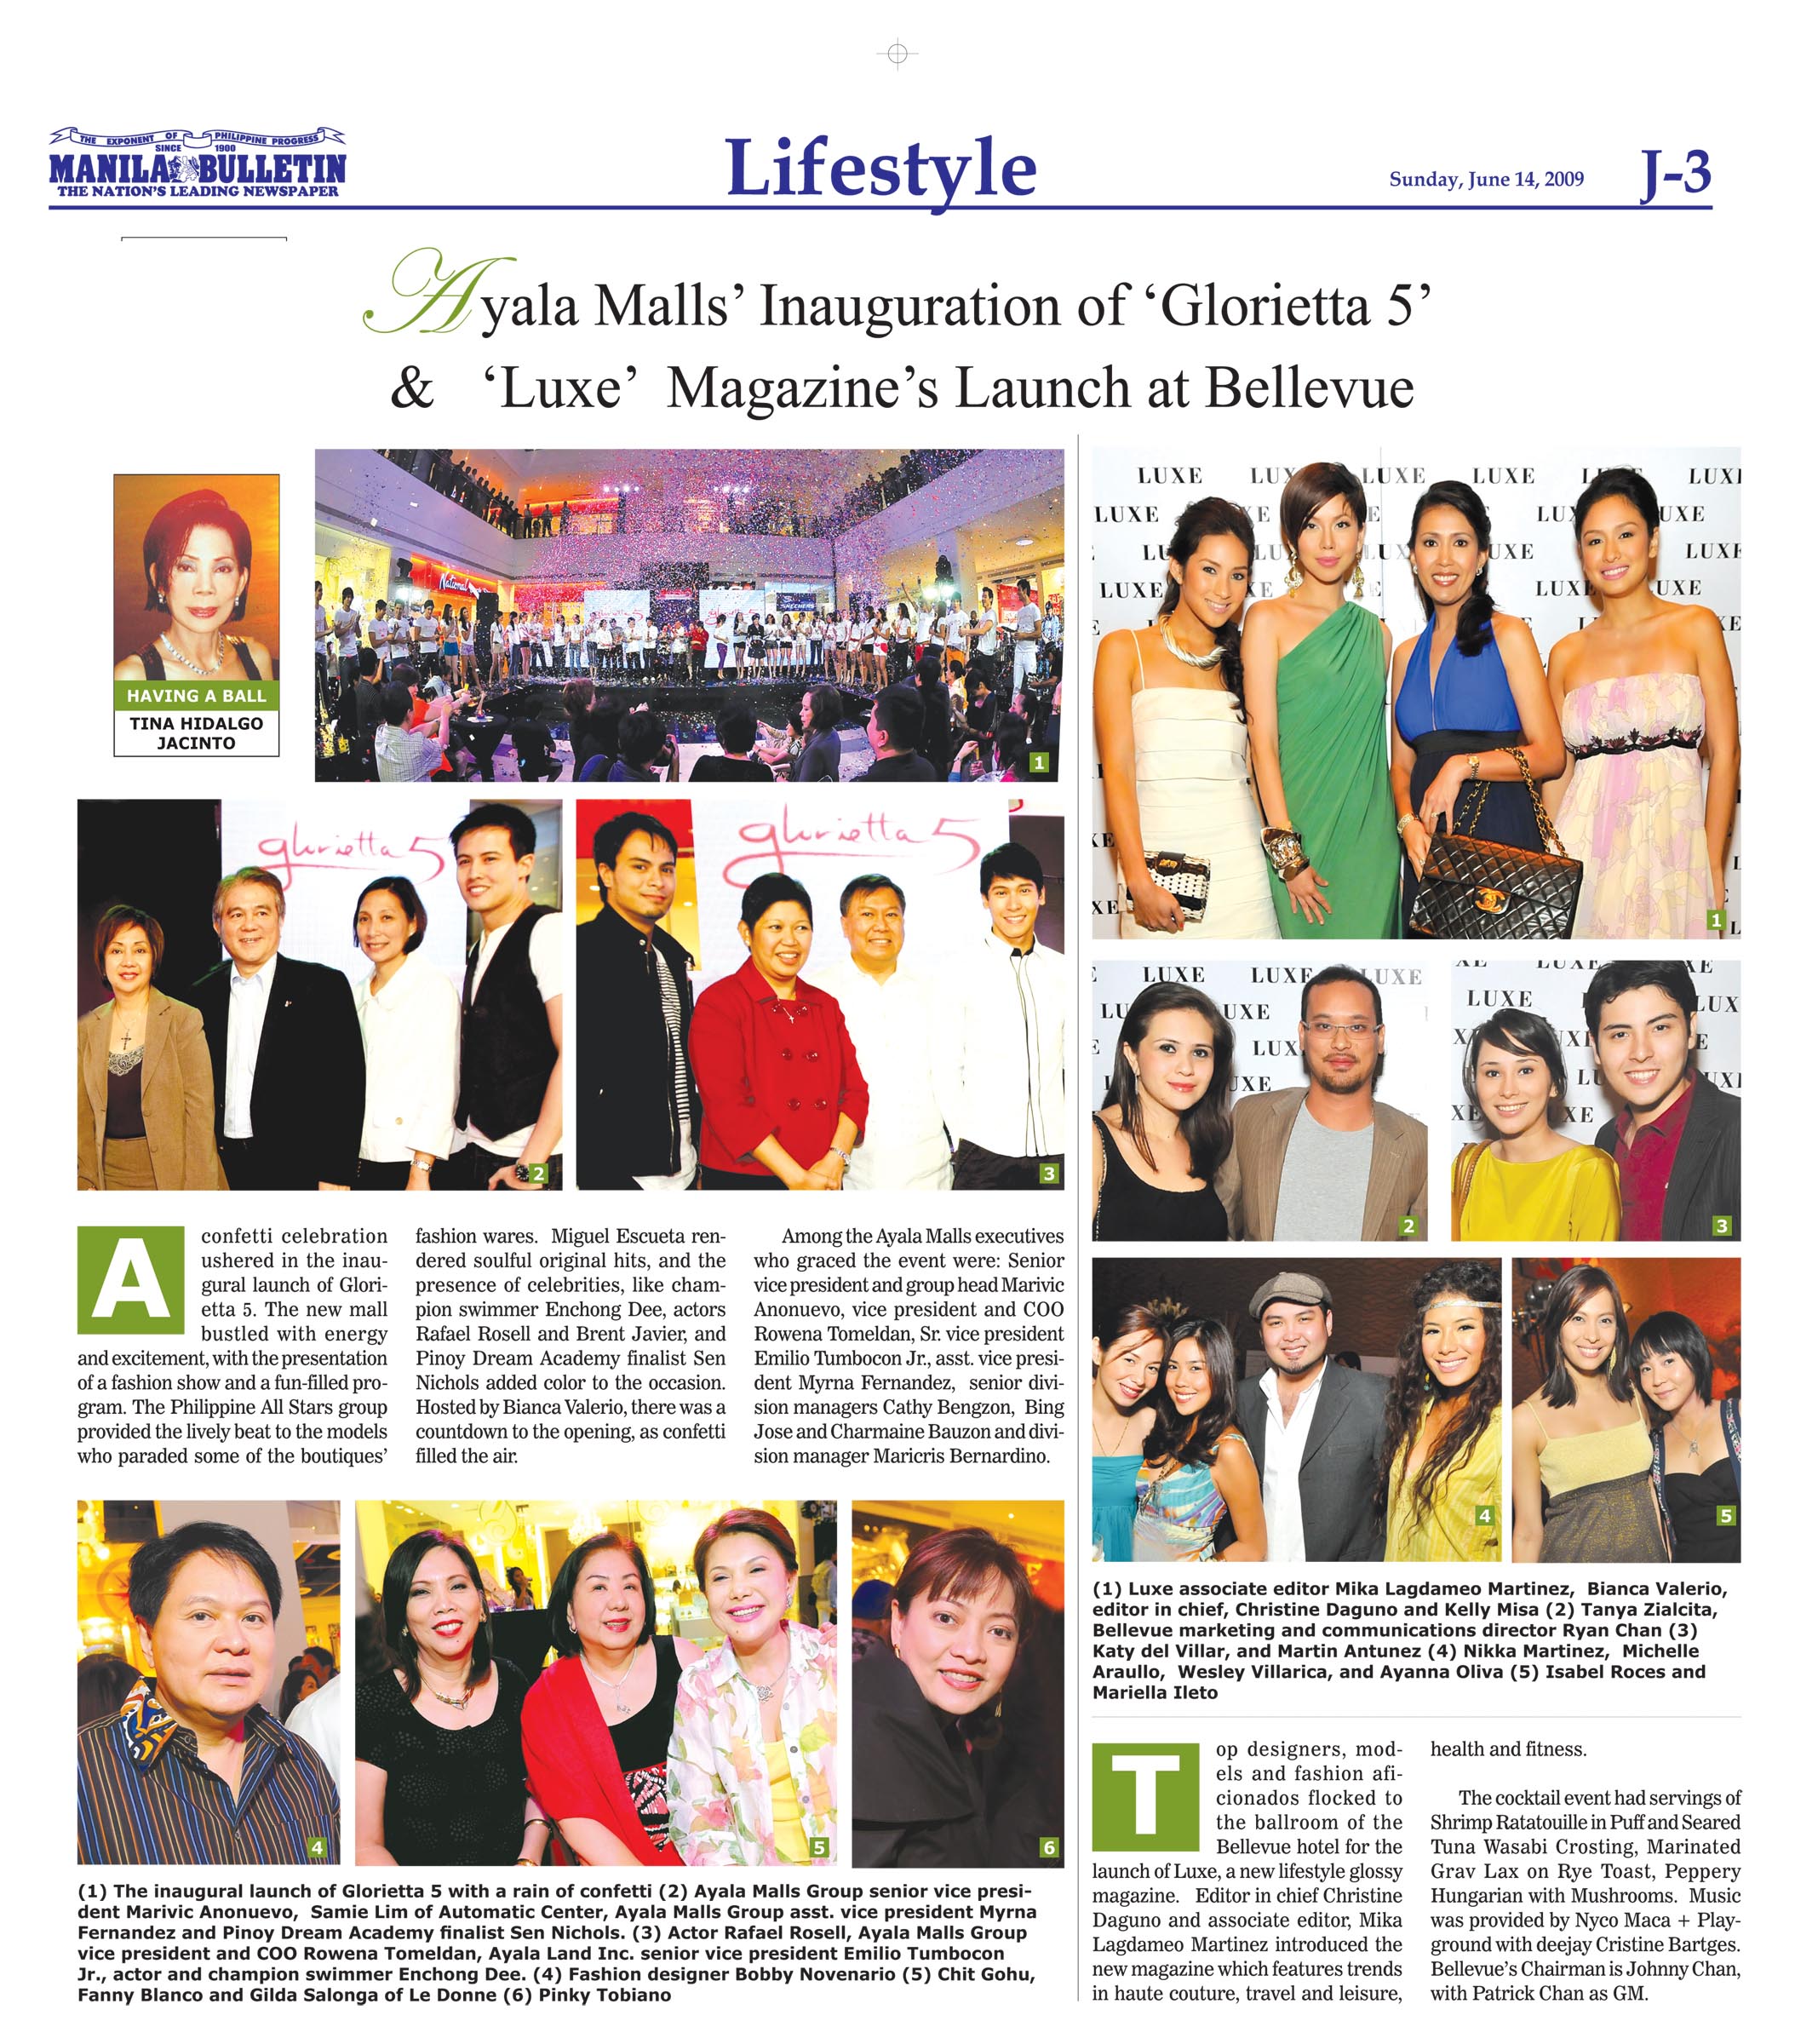 Ayala Mall Inauguration of Glorietta 5 & Luxe Magazine Launch at Bellevue